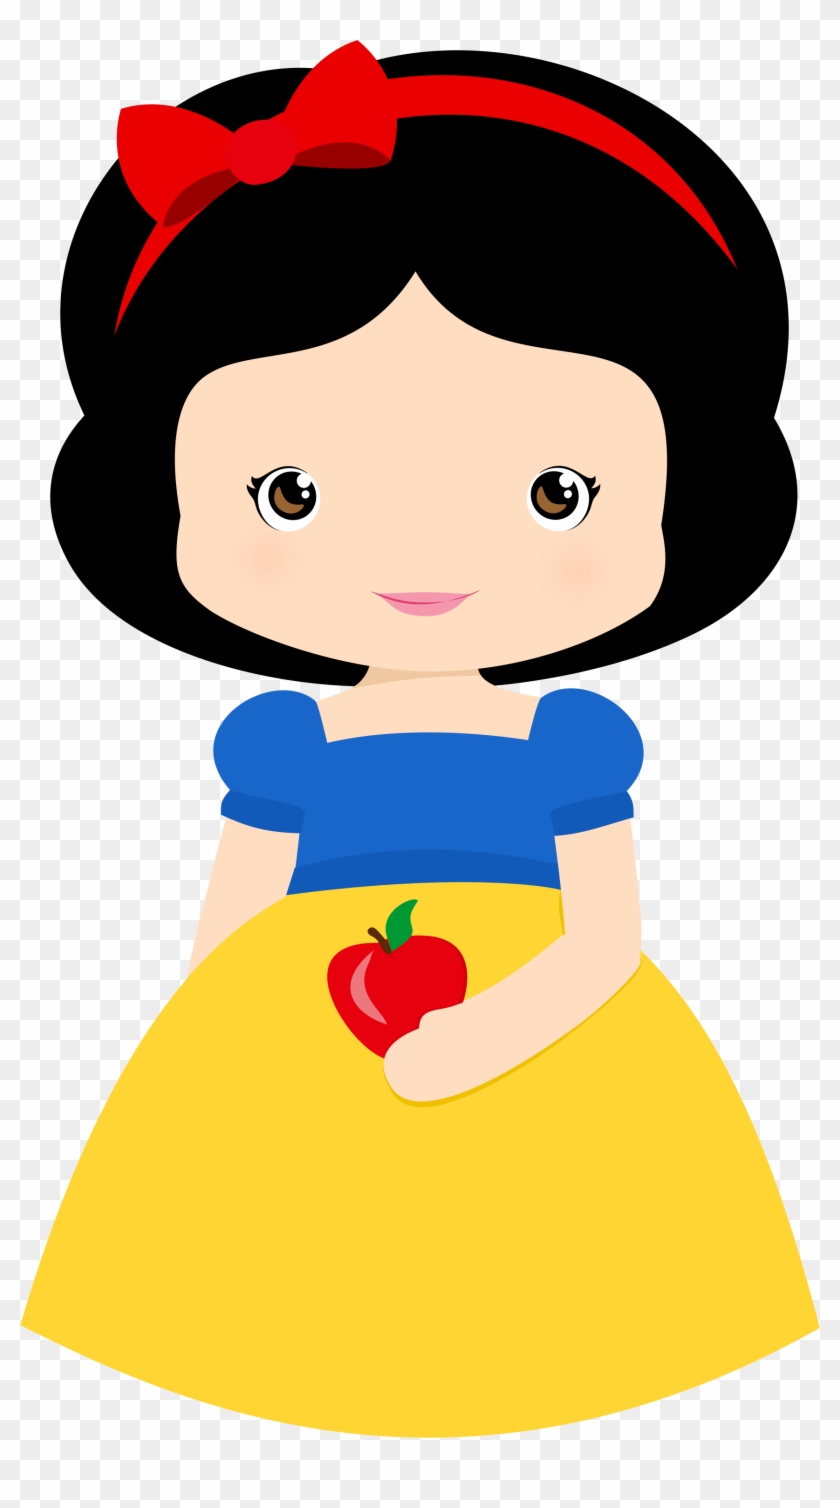 Snow White Images, Cute Princess, Disney Princess, - Branca De Neve Pequena Clipart